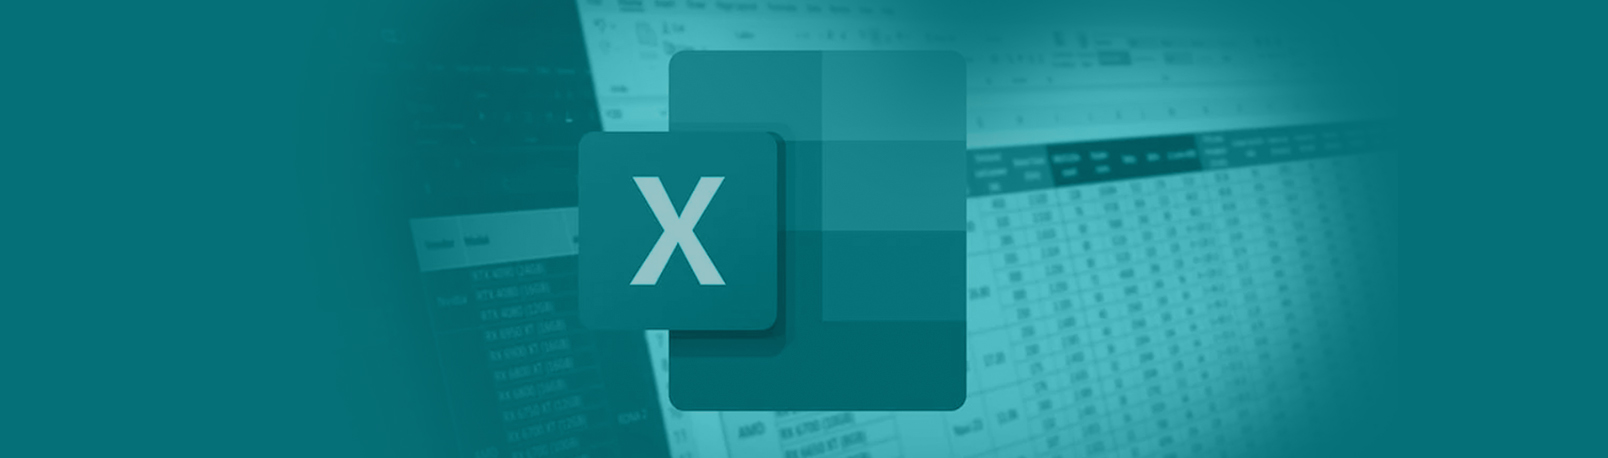 Microsoft Excel 2016 Avanzado 